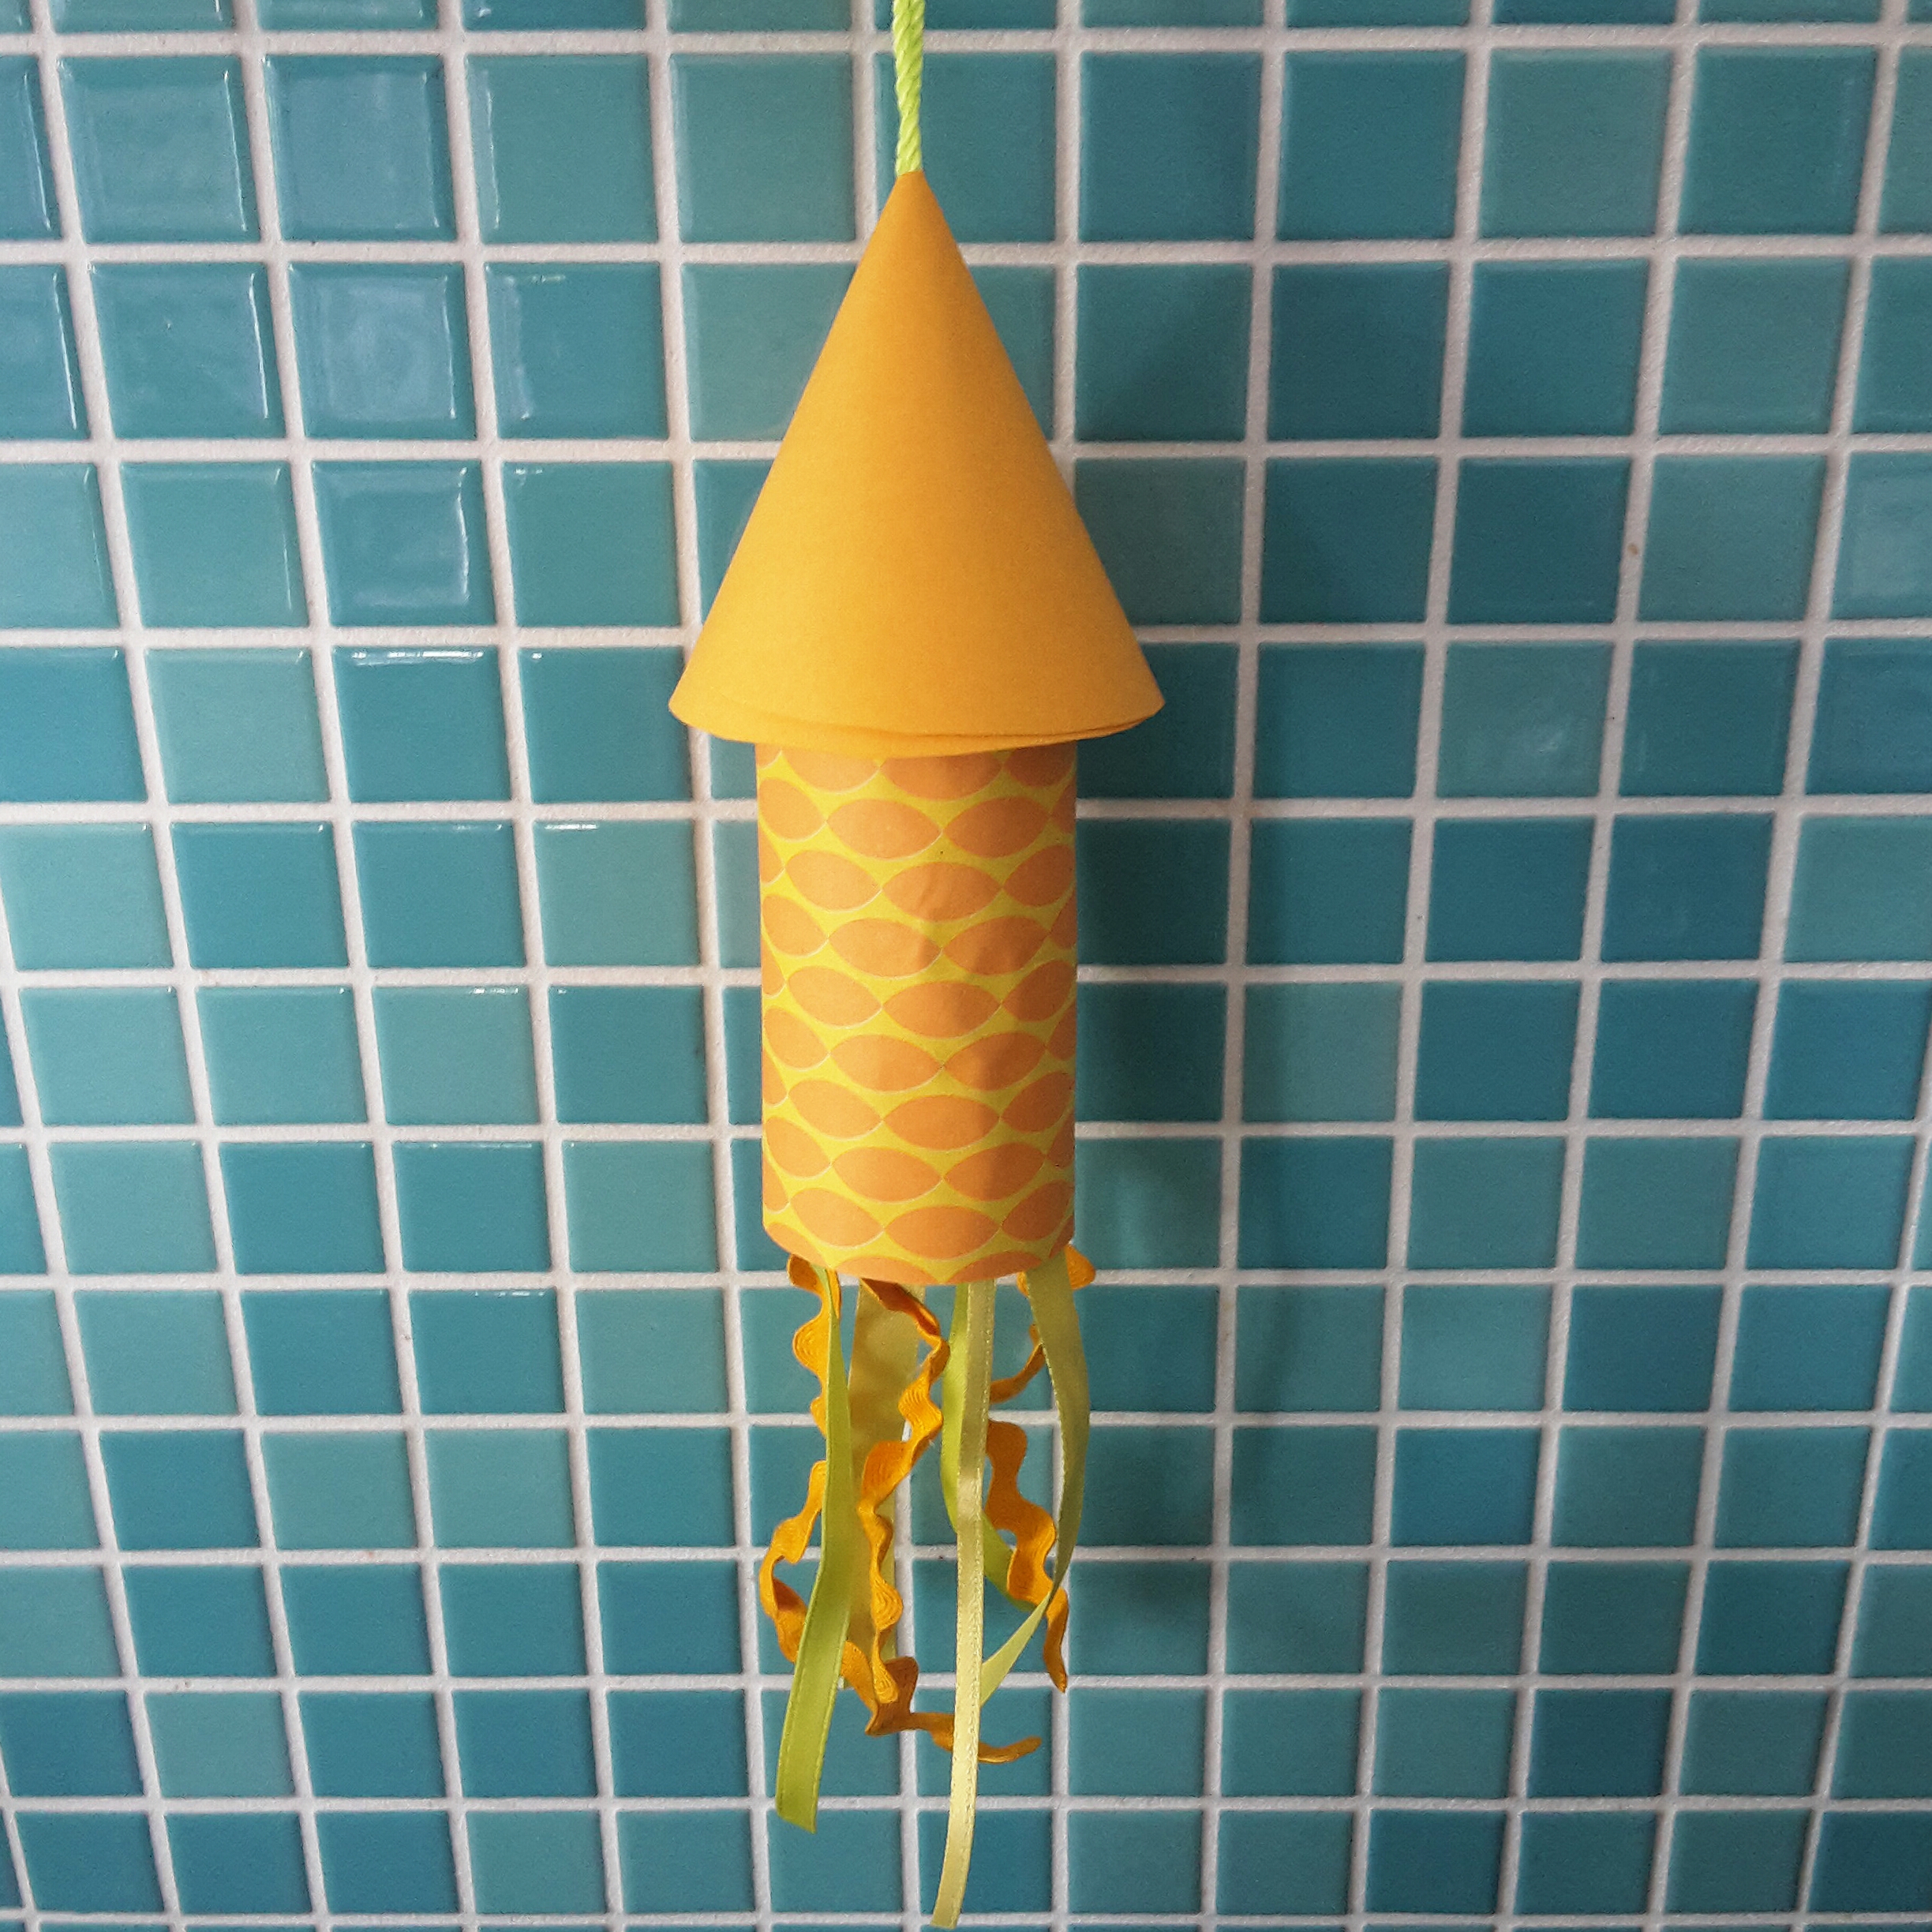 Knutselen met WC rollen: leuke ideeën voor kinderen, zoals een raket van een wc rolletje